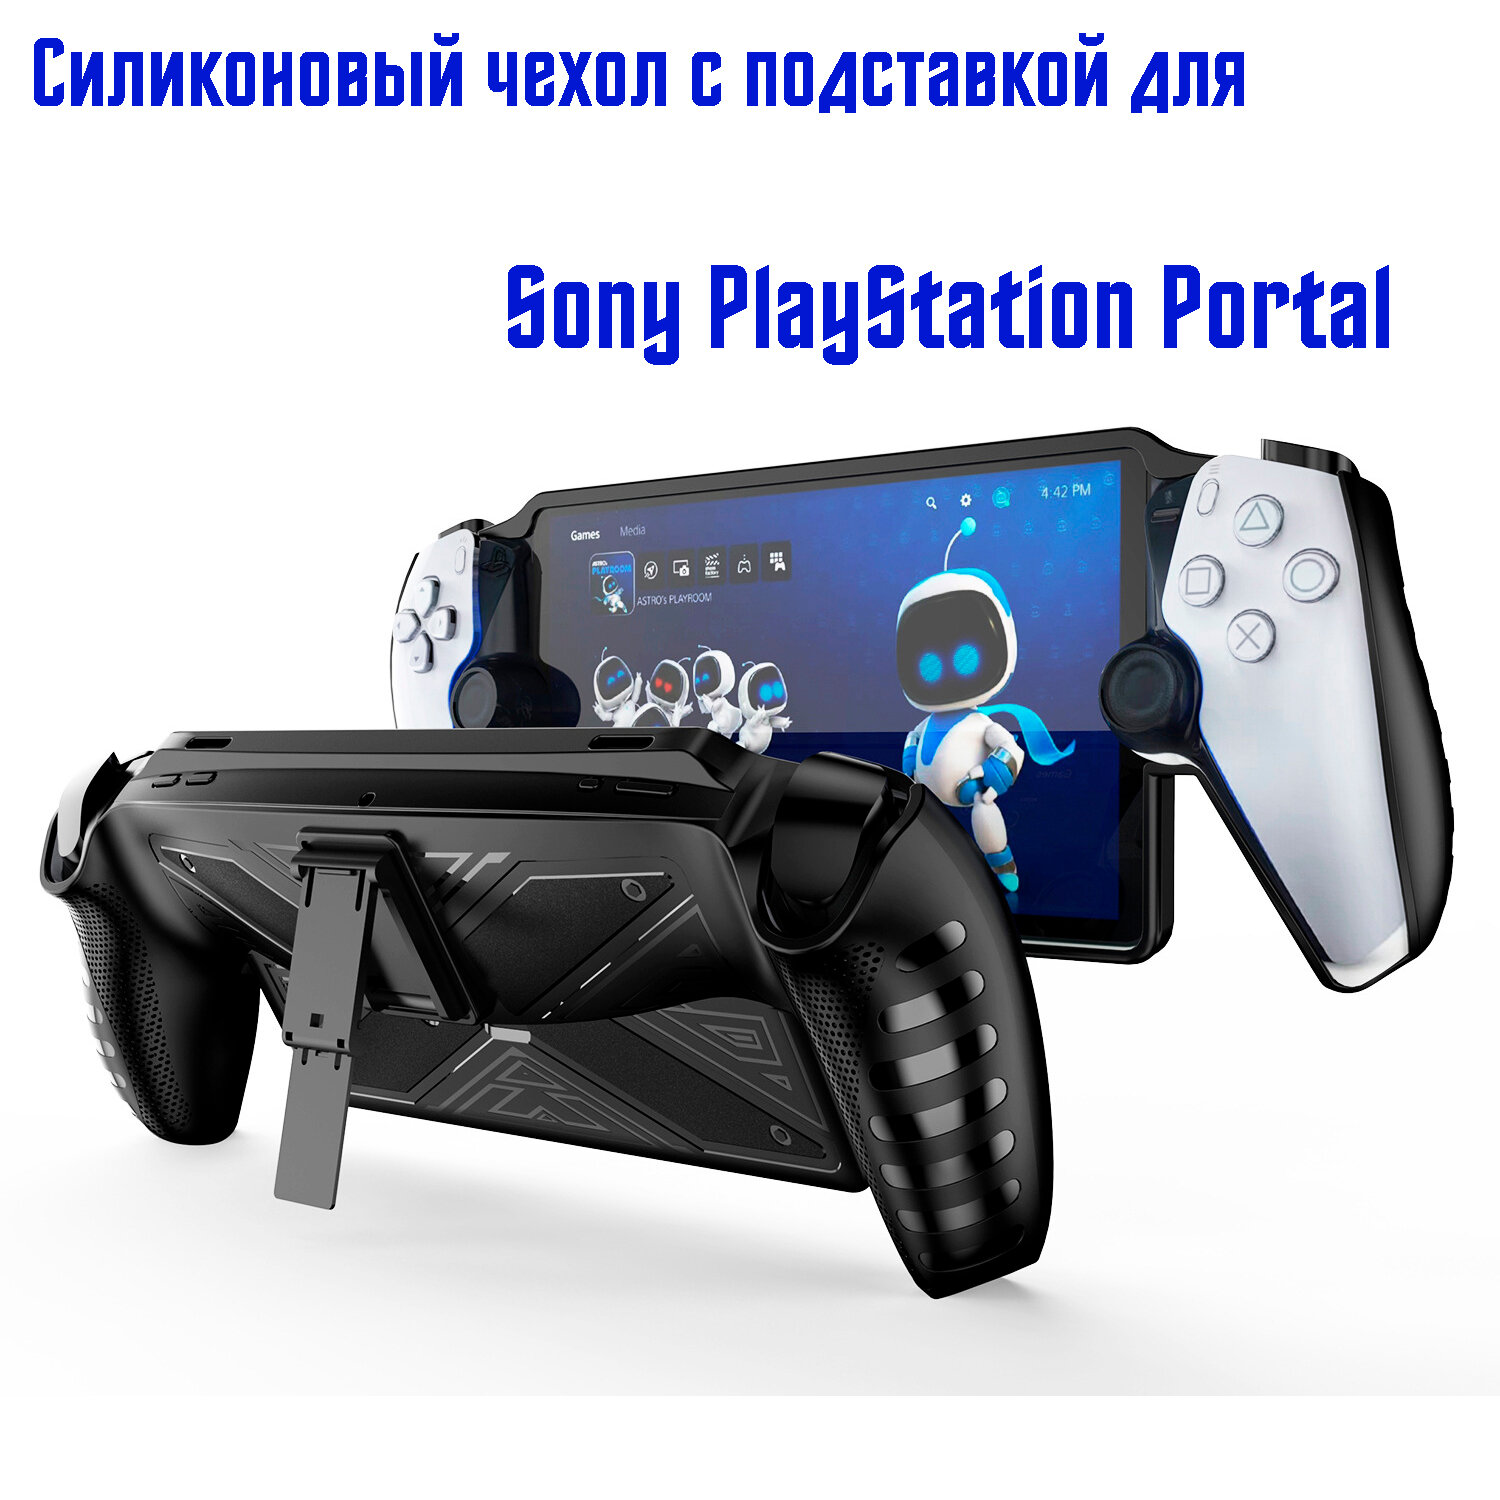 Защитный силиконовый чехол с подставкой для Sony PlayStation Portal, черный